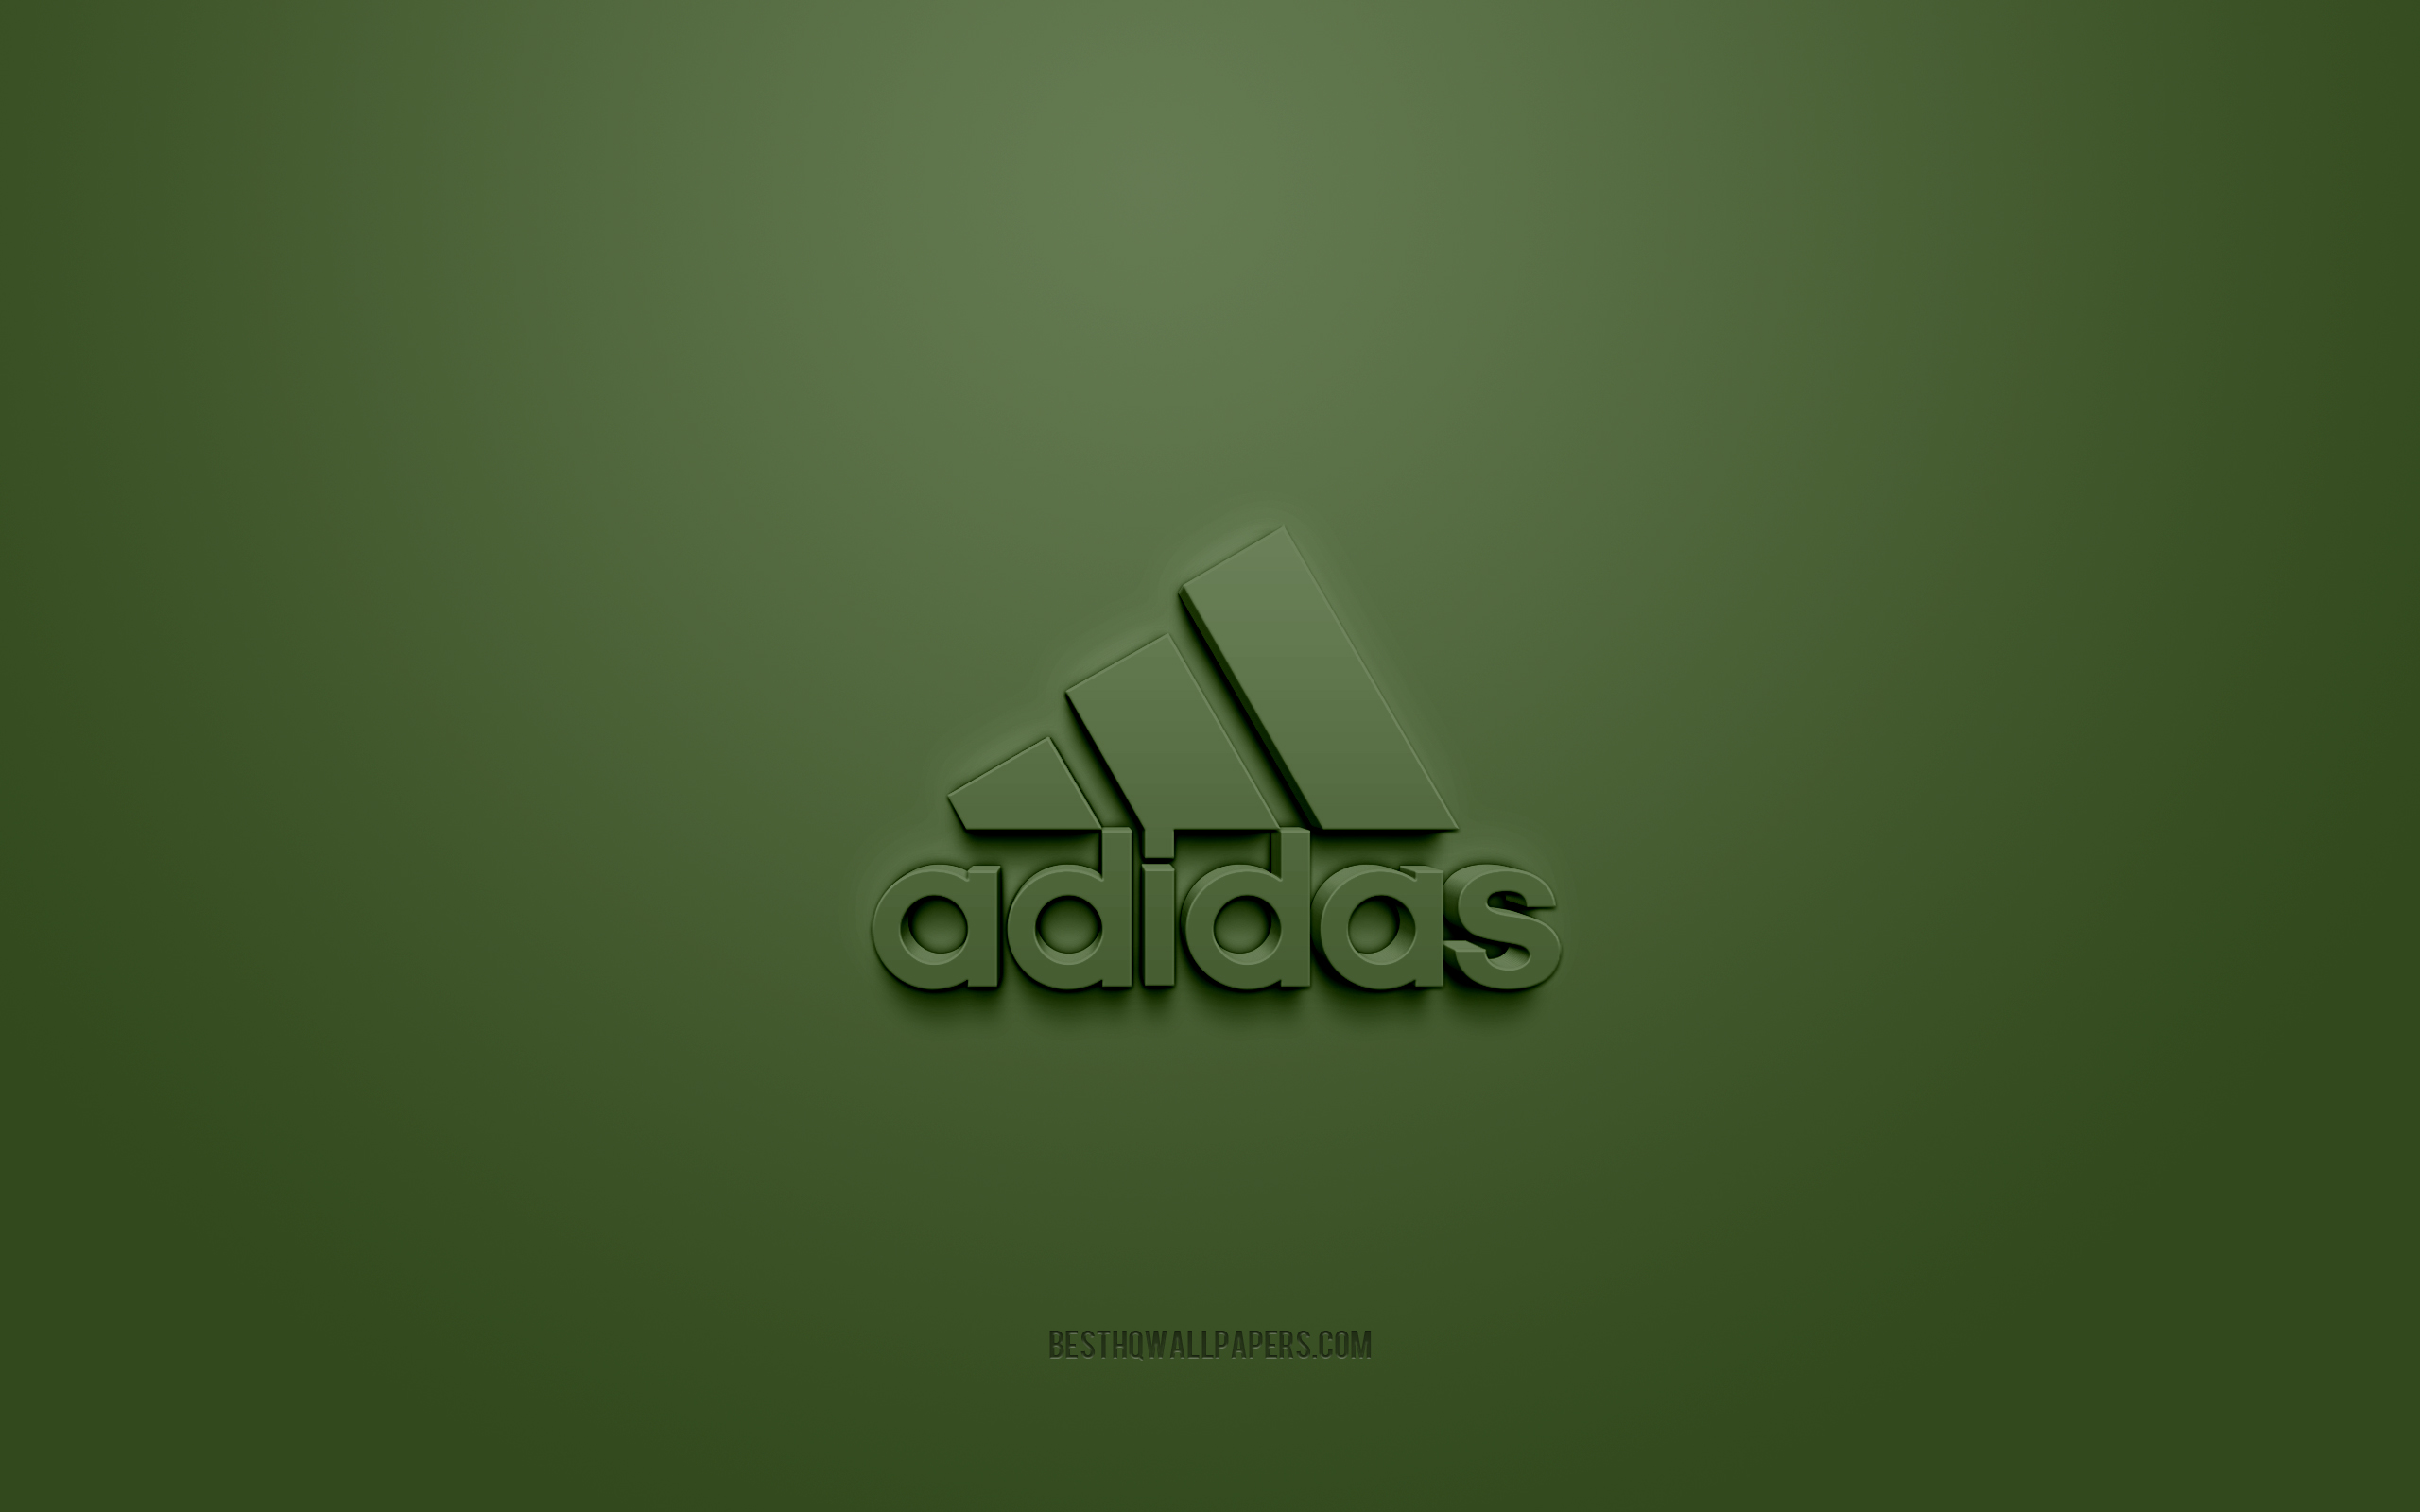 Descargar fondos de pantalla Logo de Adidas, fondo verde, logo de 3d, arte 3d, logo de marcas, logo de Adidas, logo de Adidas 3d azul monitor con una resolución 2560x1600.